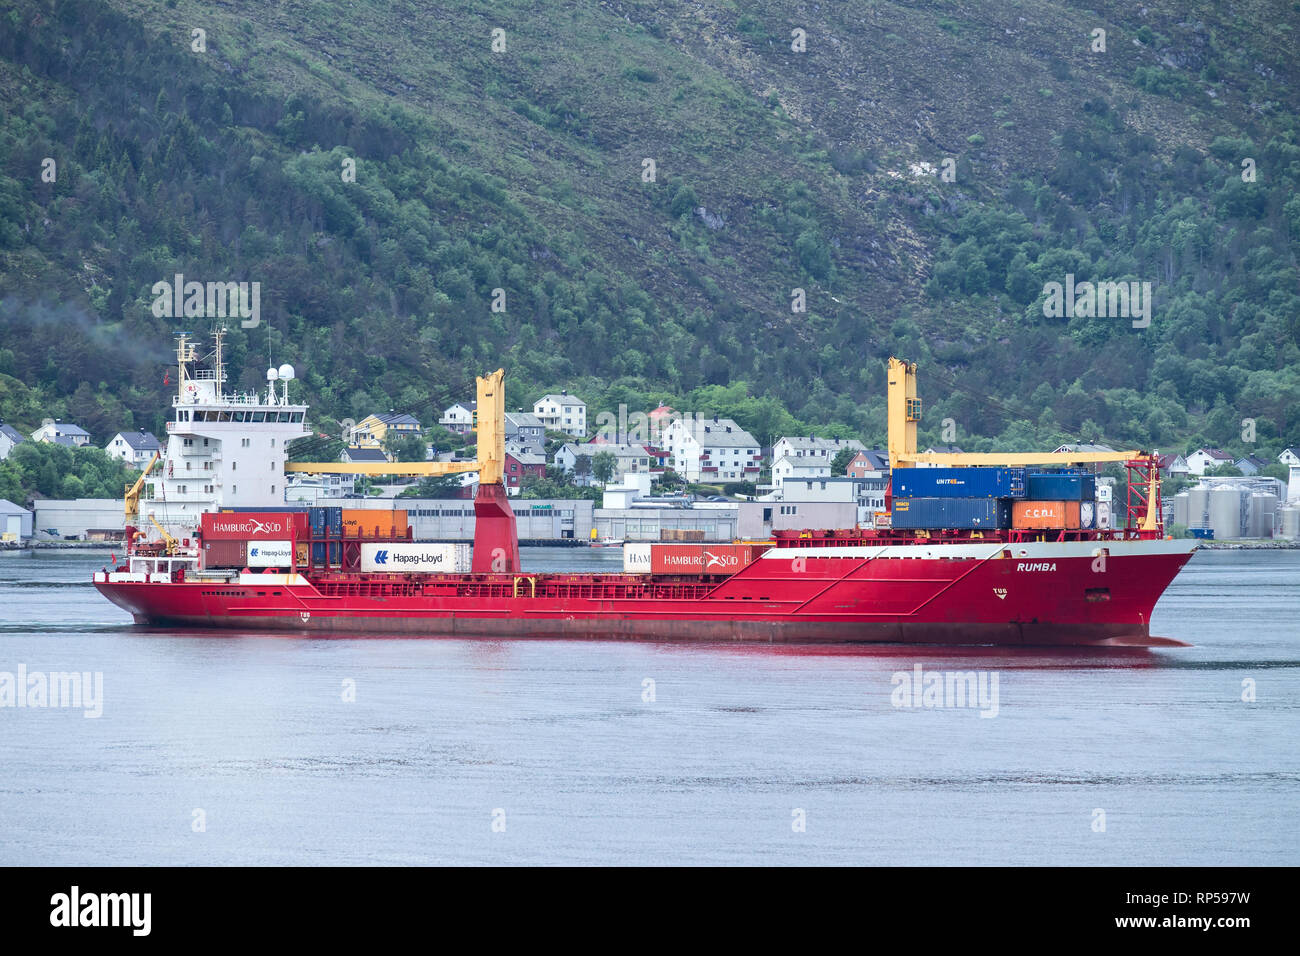 Containerschiff RUMBA im Hafen von Alesund. Alesund ist eine Gemeinde in Mehr og Romsdal County, Norwegen. Stockfoto